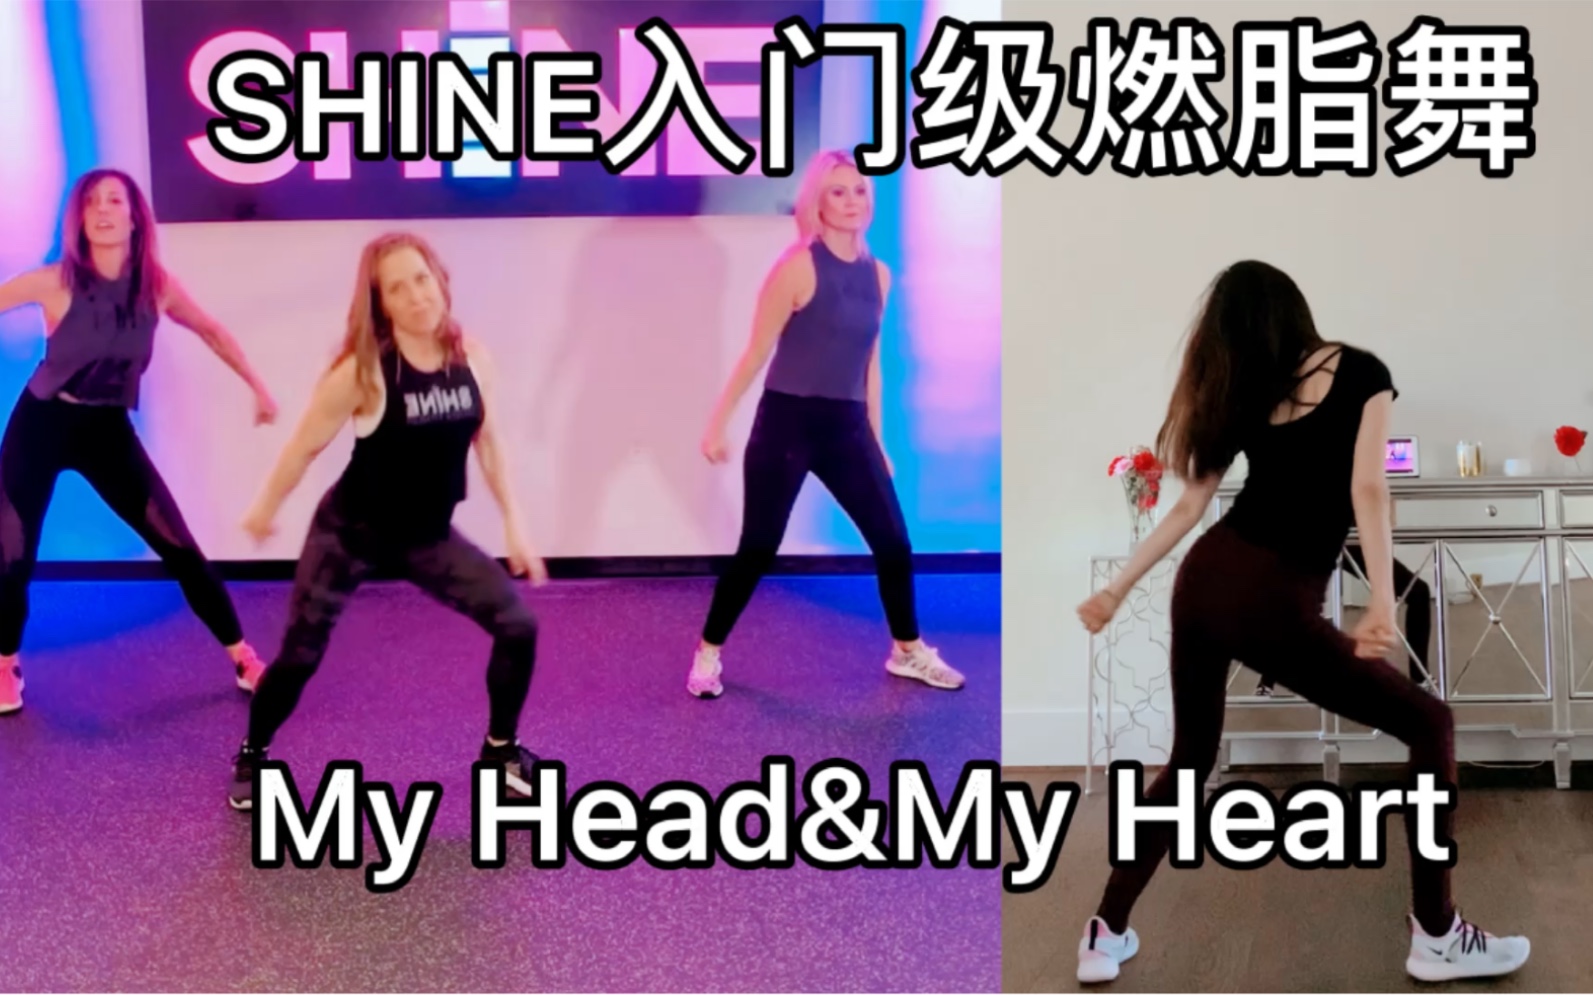 Shine Dance Fitness 《My Head & My Heart》入门级健身燃脂减肥瘦身操